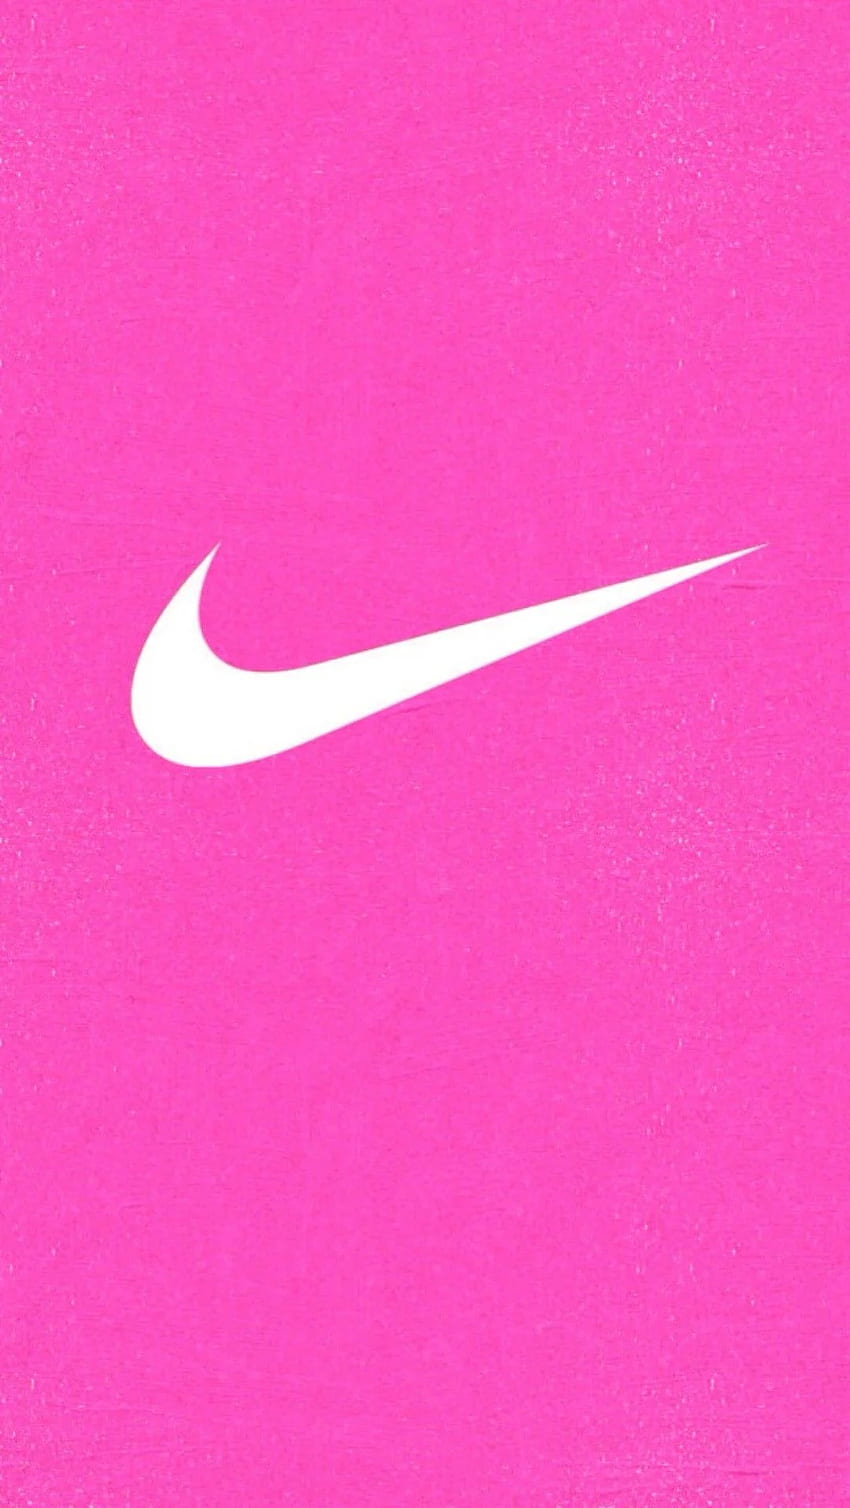 Một hình nền Nike màu hồng nhẹ nhàng và tươi sáng thật phù hợp với những bạn yêu thích sự ngọt ngào. Với chiếc điện thoại hay máy tính được trang trí bởi hình nền này, bạn sẽ cảm thấy dễ chịu và thư giãn hơn. Hãy tìm hiểu để biết thêm các bộ sưu tập hình nền Nike đầy sáng tạo.